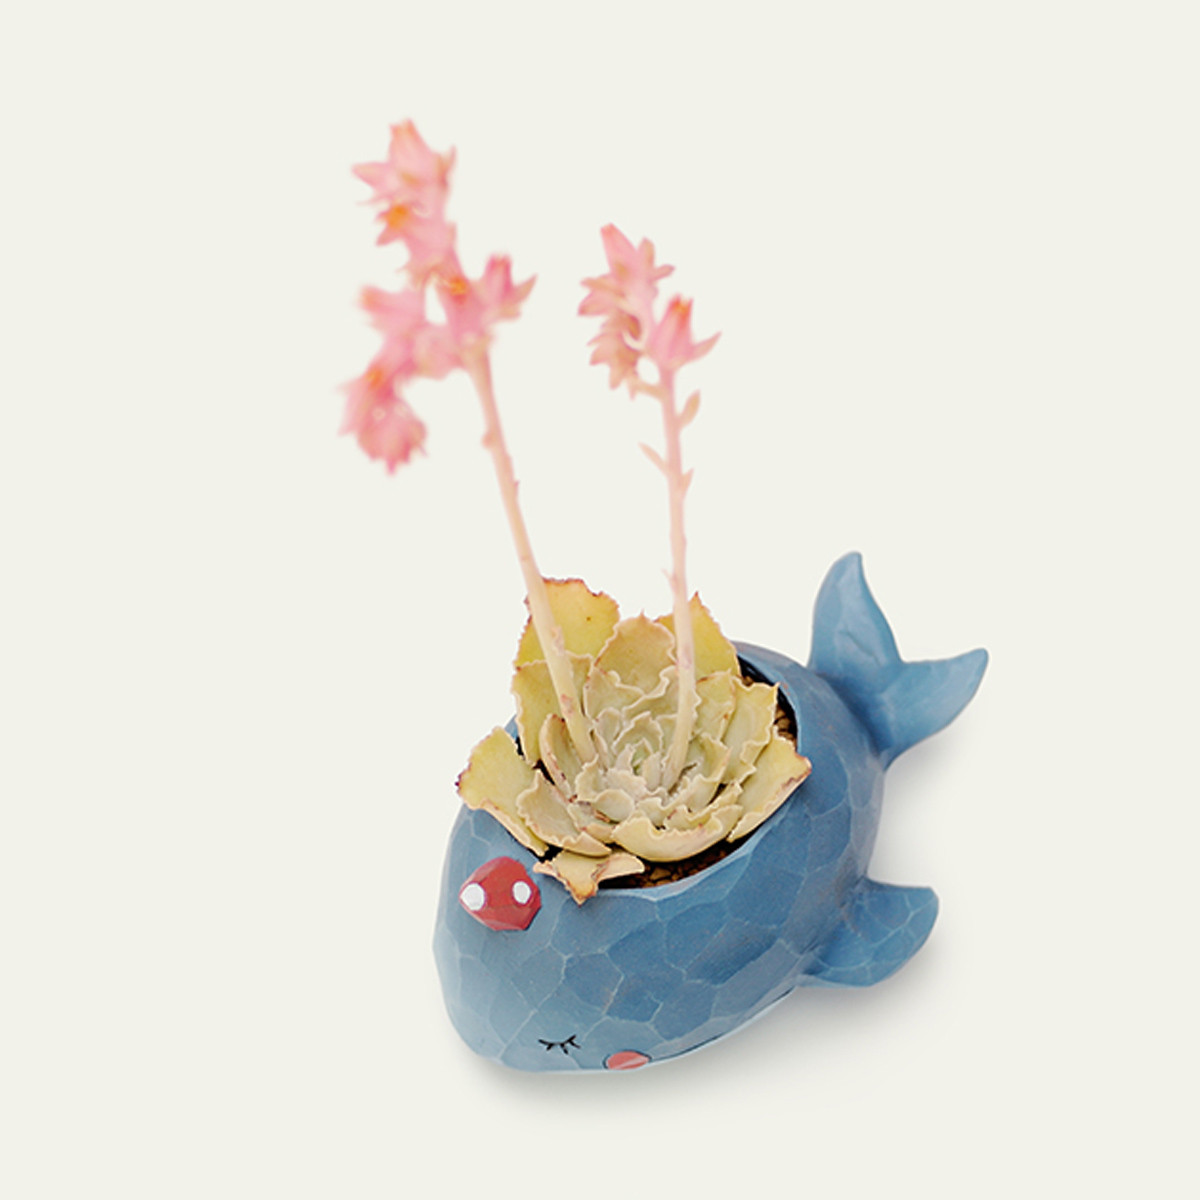 Whale-Planter-Resin-Potted-Plants-Succulent-Cactus-Flower-Pot-Craft-Ornaments-1473194-8